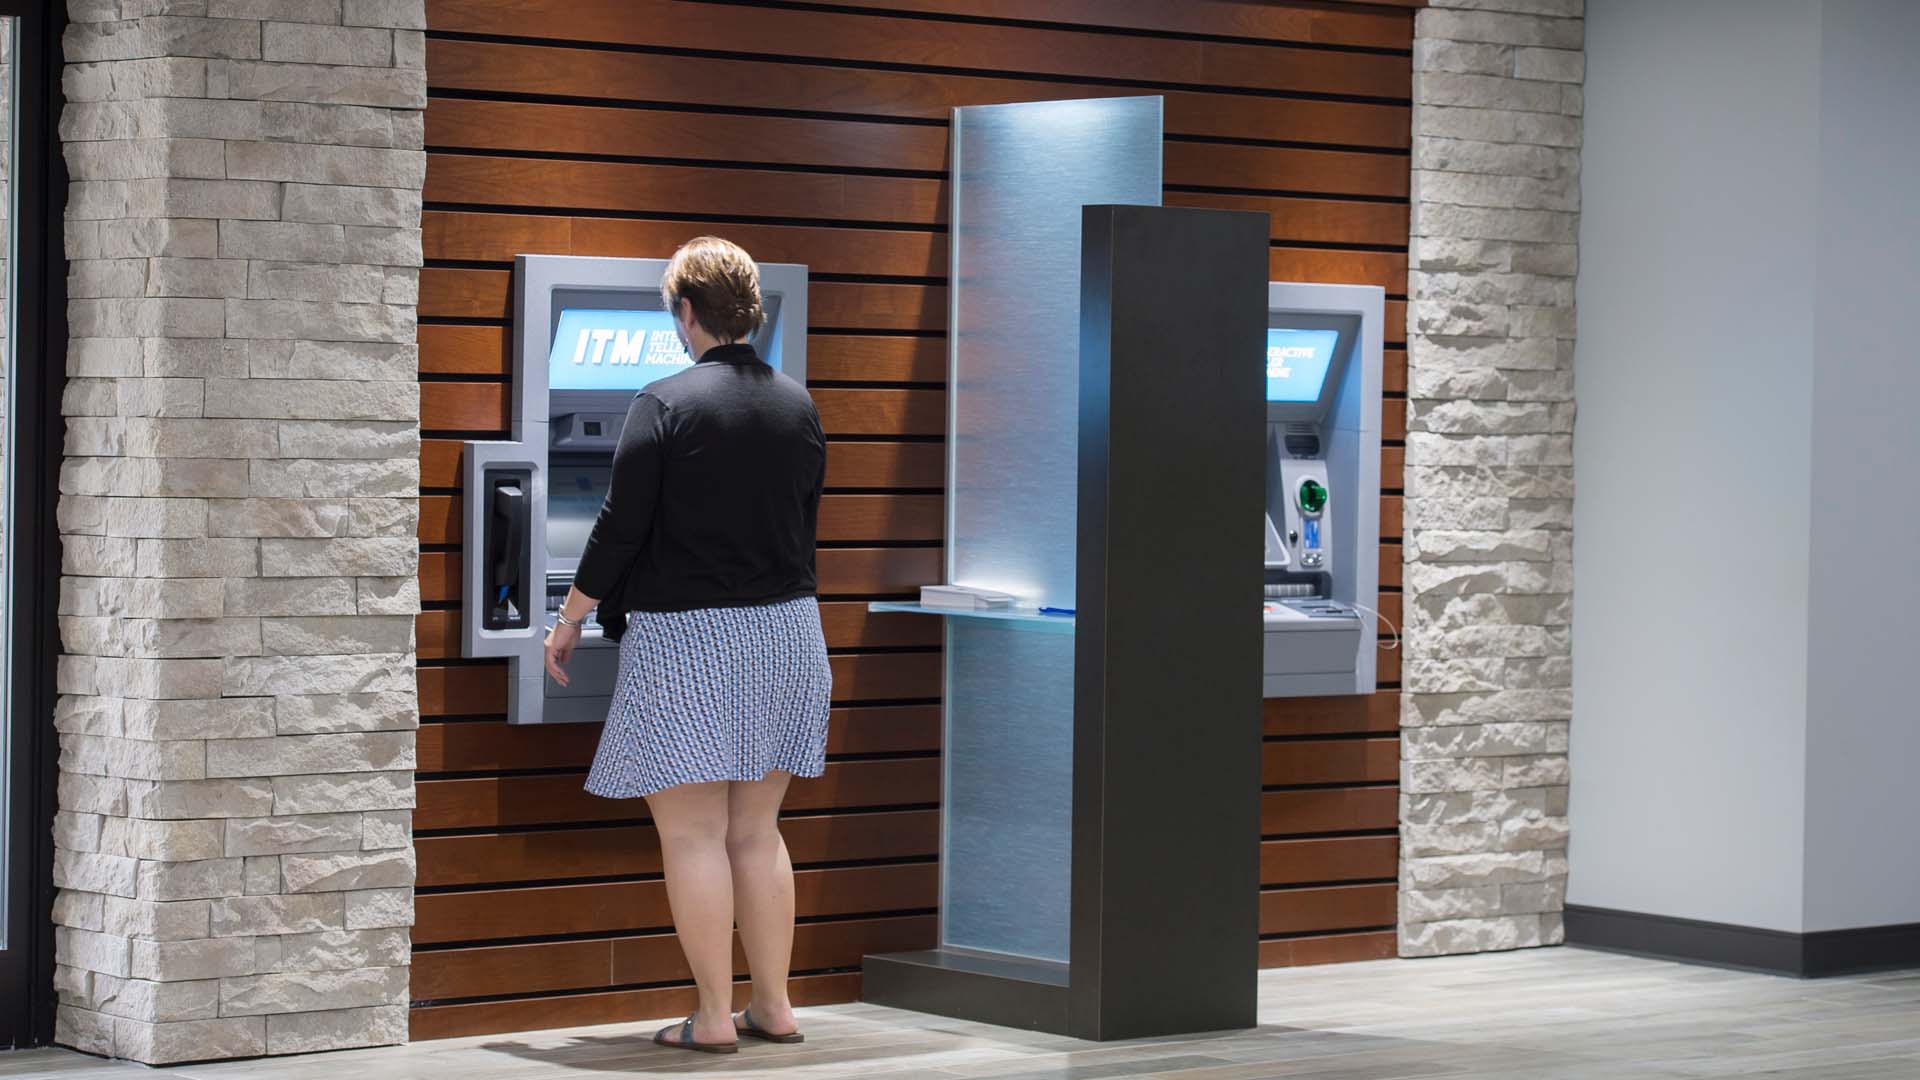 ORNL West - Indoor ATM